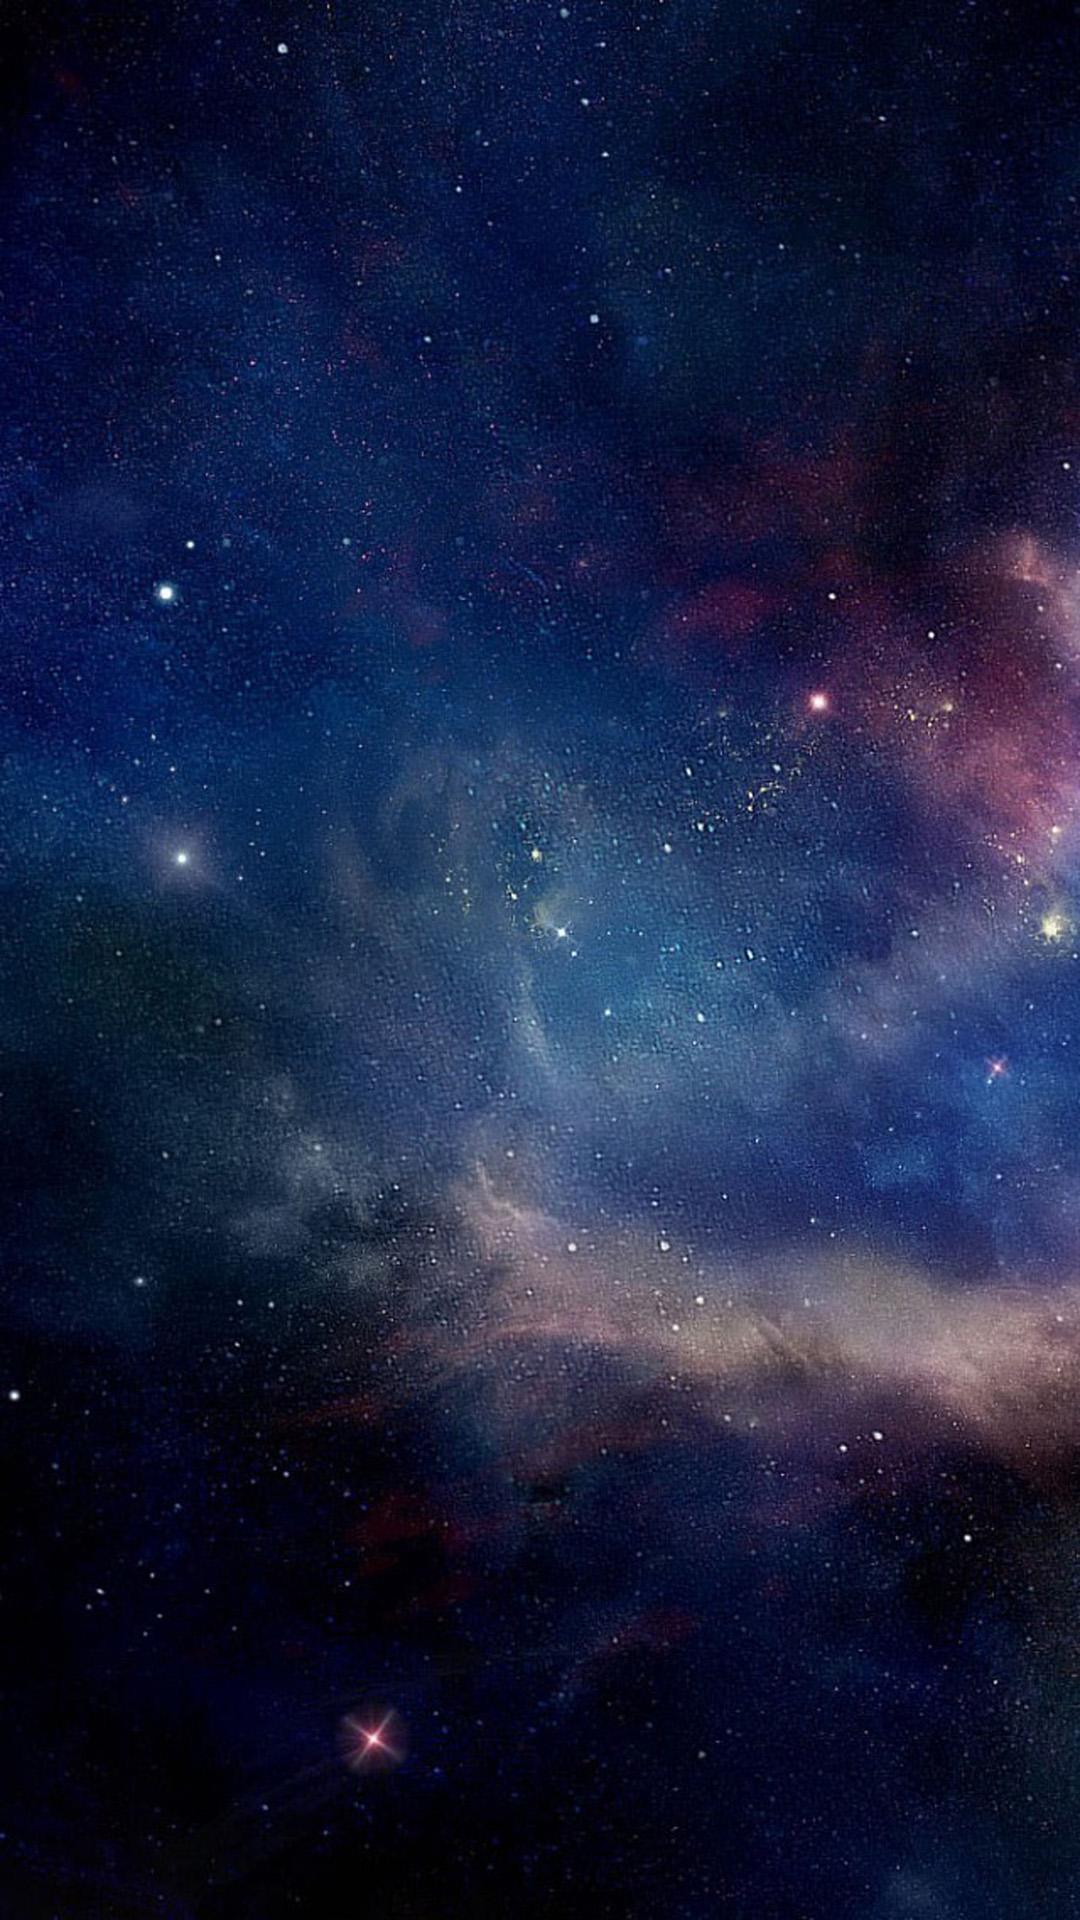 Milky Way Galaxy Wallpaper - TubeWP - Hình nền Galaxy Milky Way là một sự lựa chọn tuyệt vời cho những ai yêu thích không gian bao la của vũ trụ. Hãy cùng khám phá TubeWP để tải xuống những bức ảnh nền tuyệt đẹp về chủ đề này và choáng ngợp trước vẻ đẹp của thiên nhiên.